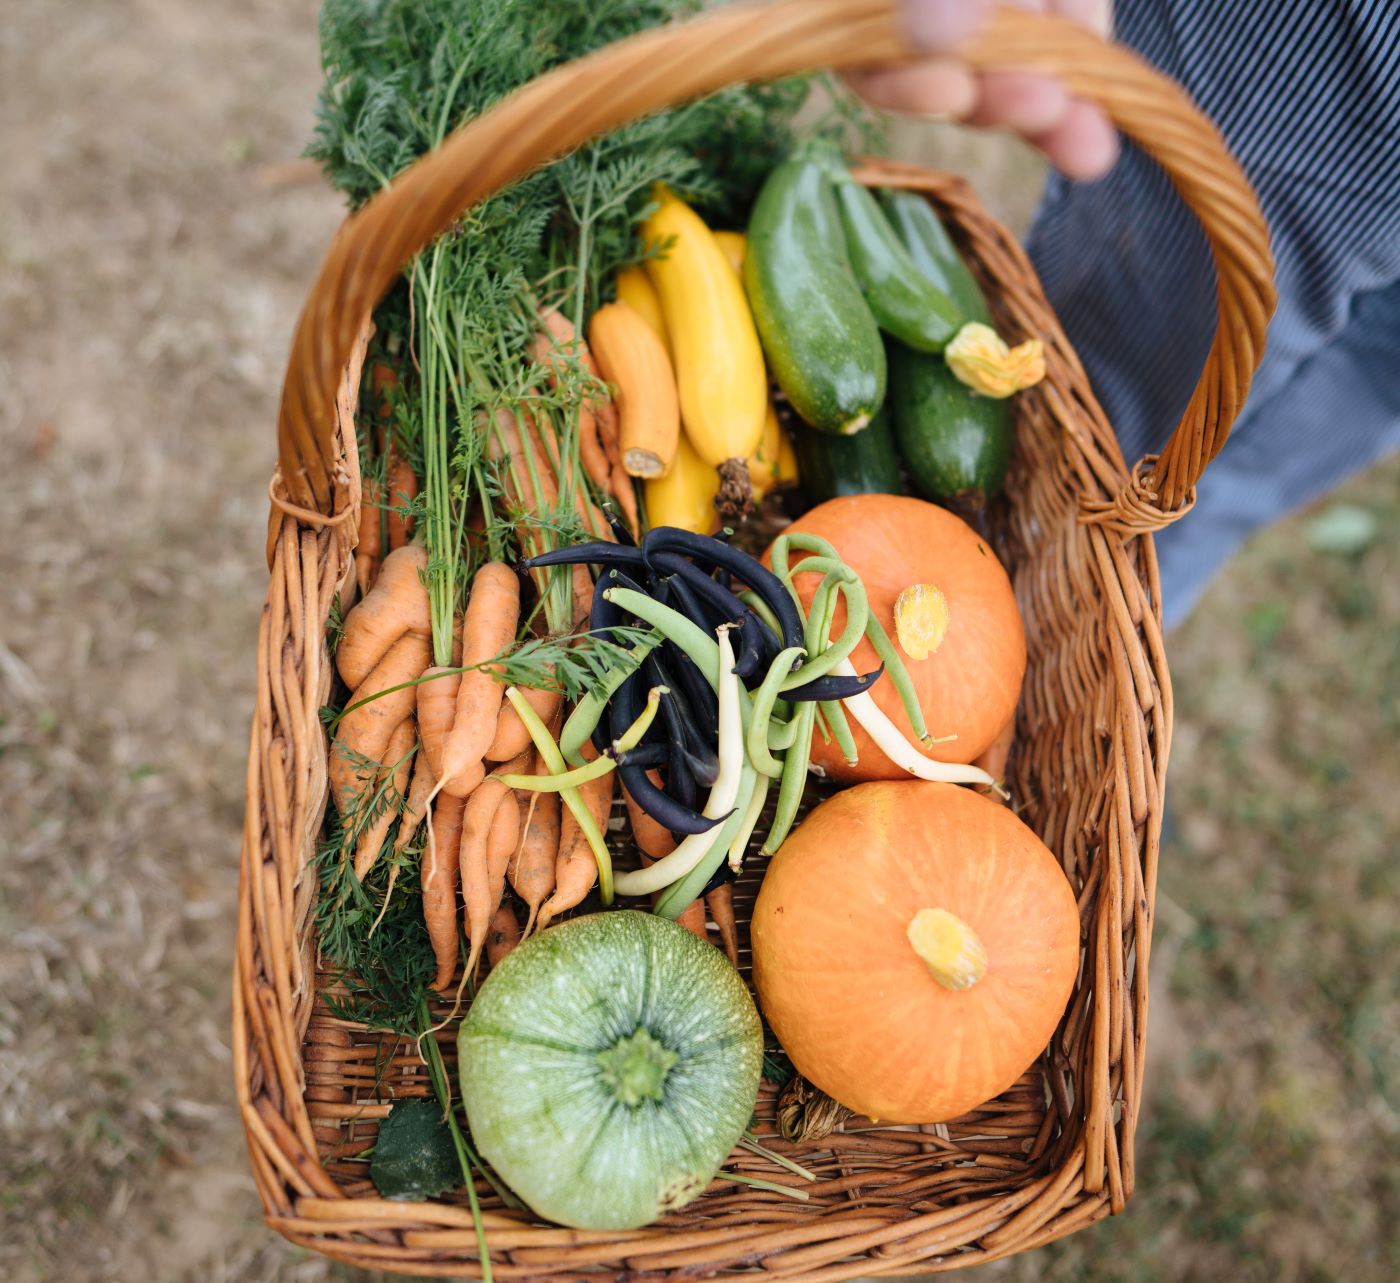 Ein Korb mit frisch gepflücktem, buntem Gemüse wird von einer Person außerhalb des Bildes gehalten.